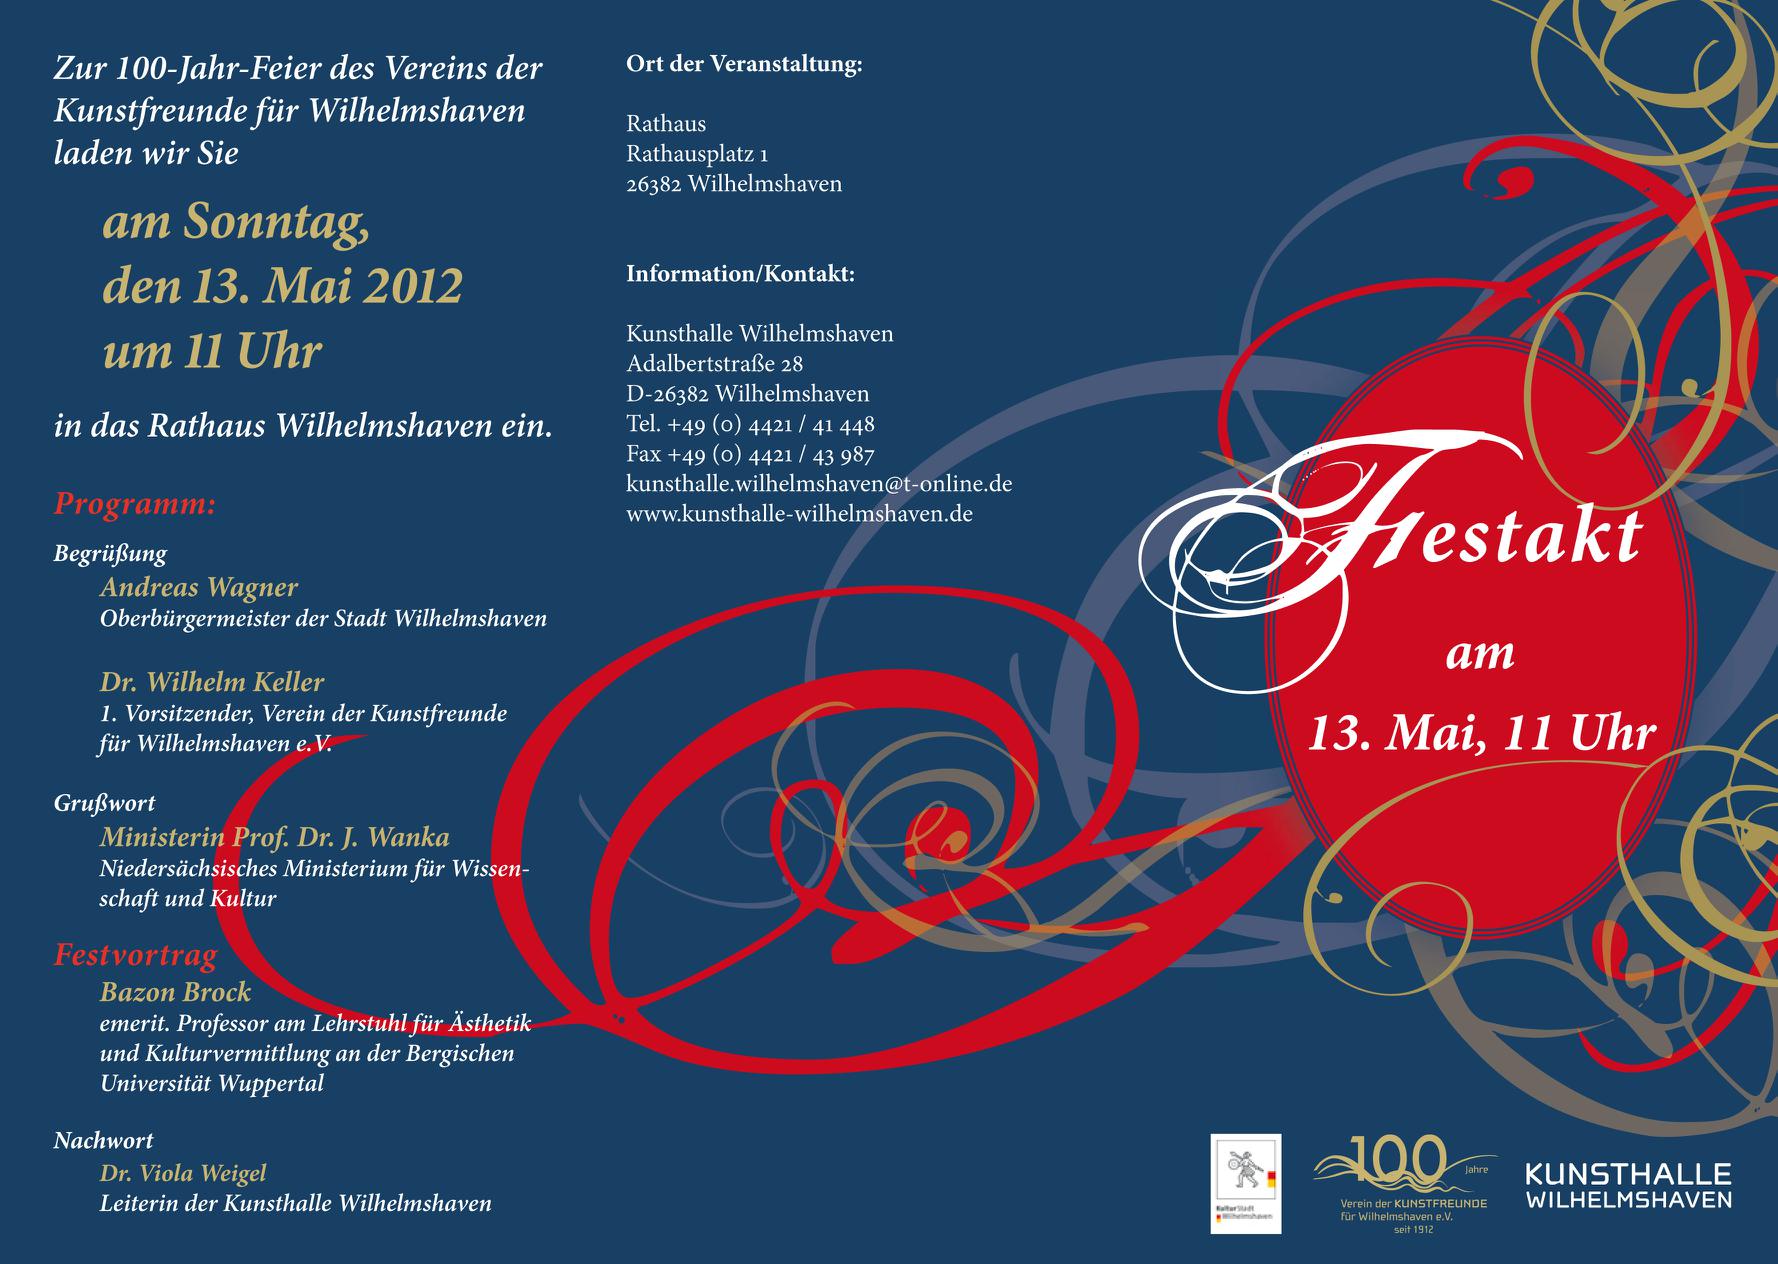 Festakt zur 100-Jahr-Feier des Vereins der Kunstfreunde für Wilhelmshaven am 13.05.2012, Bild: Programm, S. 1..